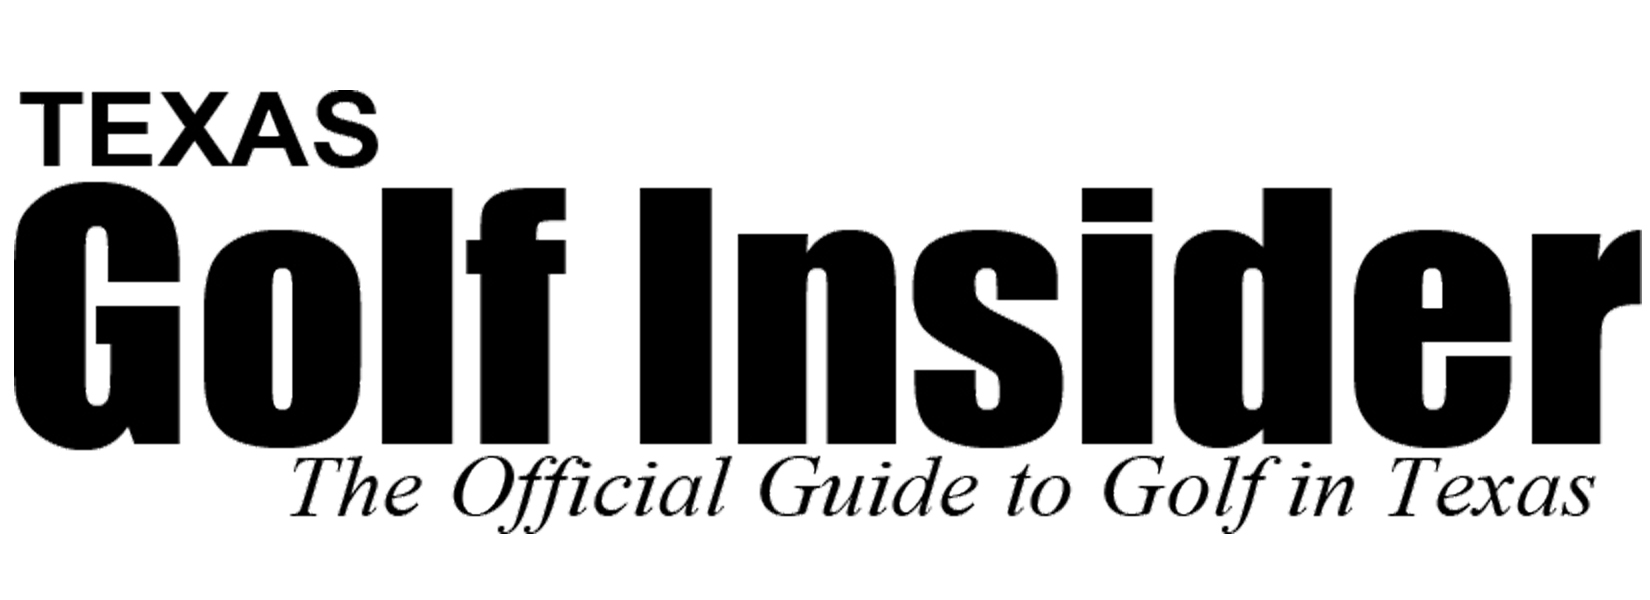 Texas Golf Insider logo.jpg